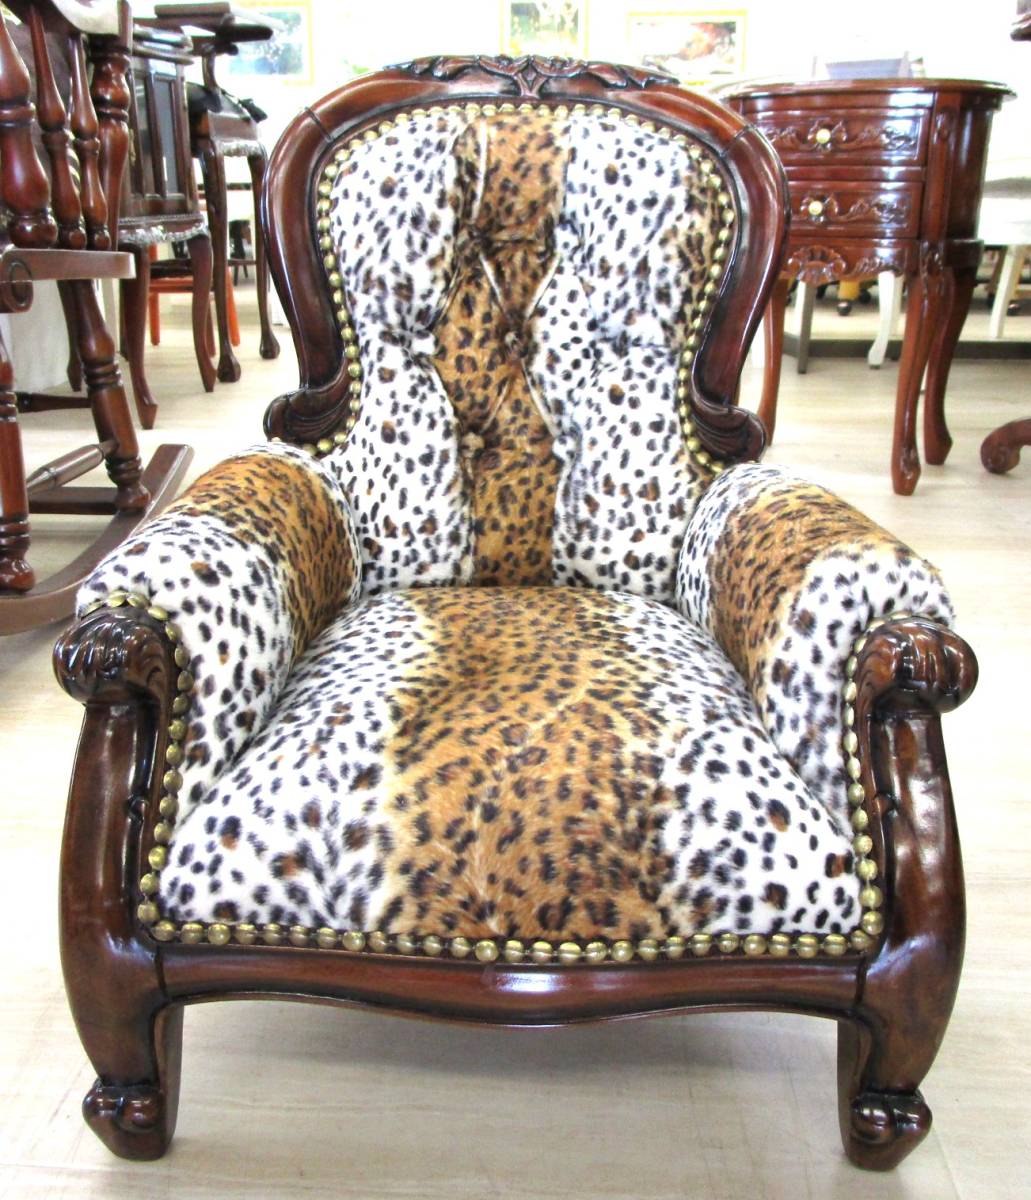 こども皇帝椅子 JV-008ANI, ハンドメイド作品, 家具, 椅子, 椅子, チェア